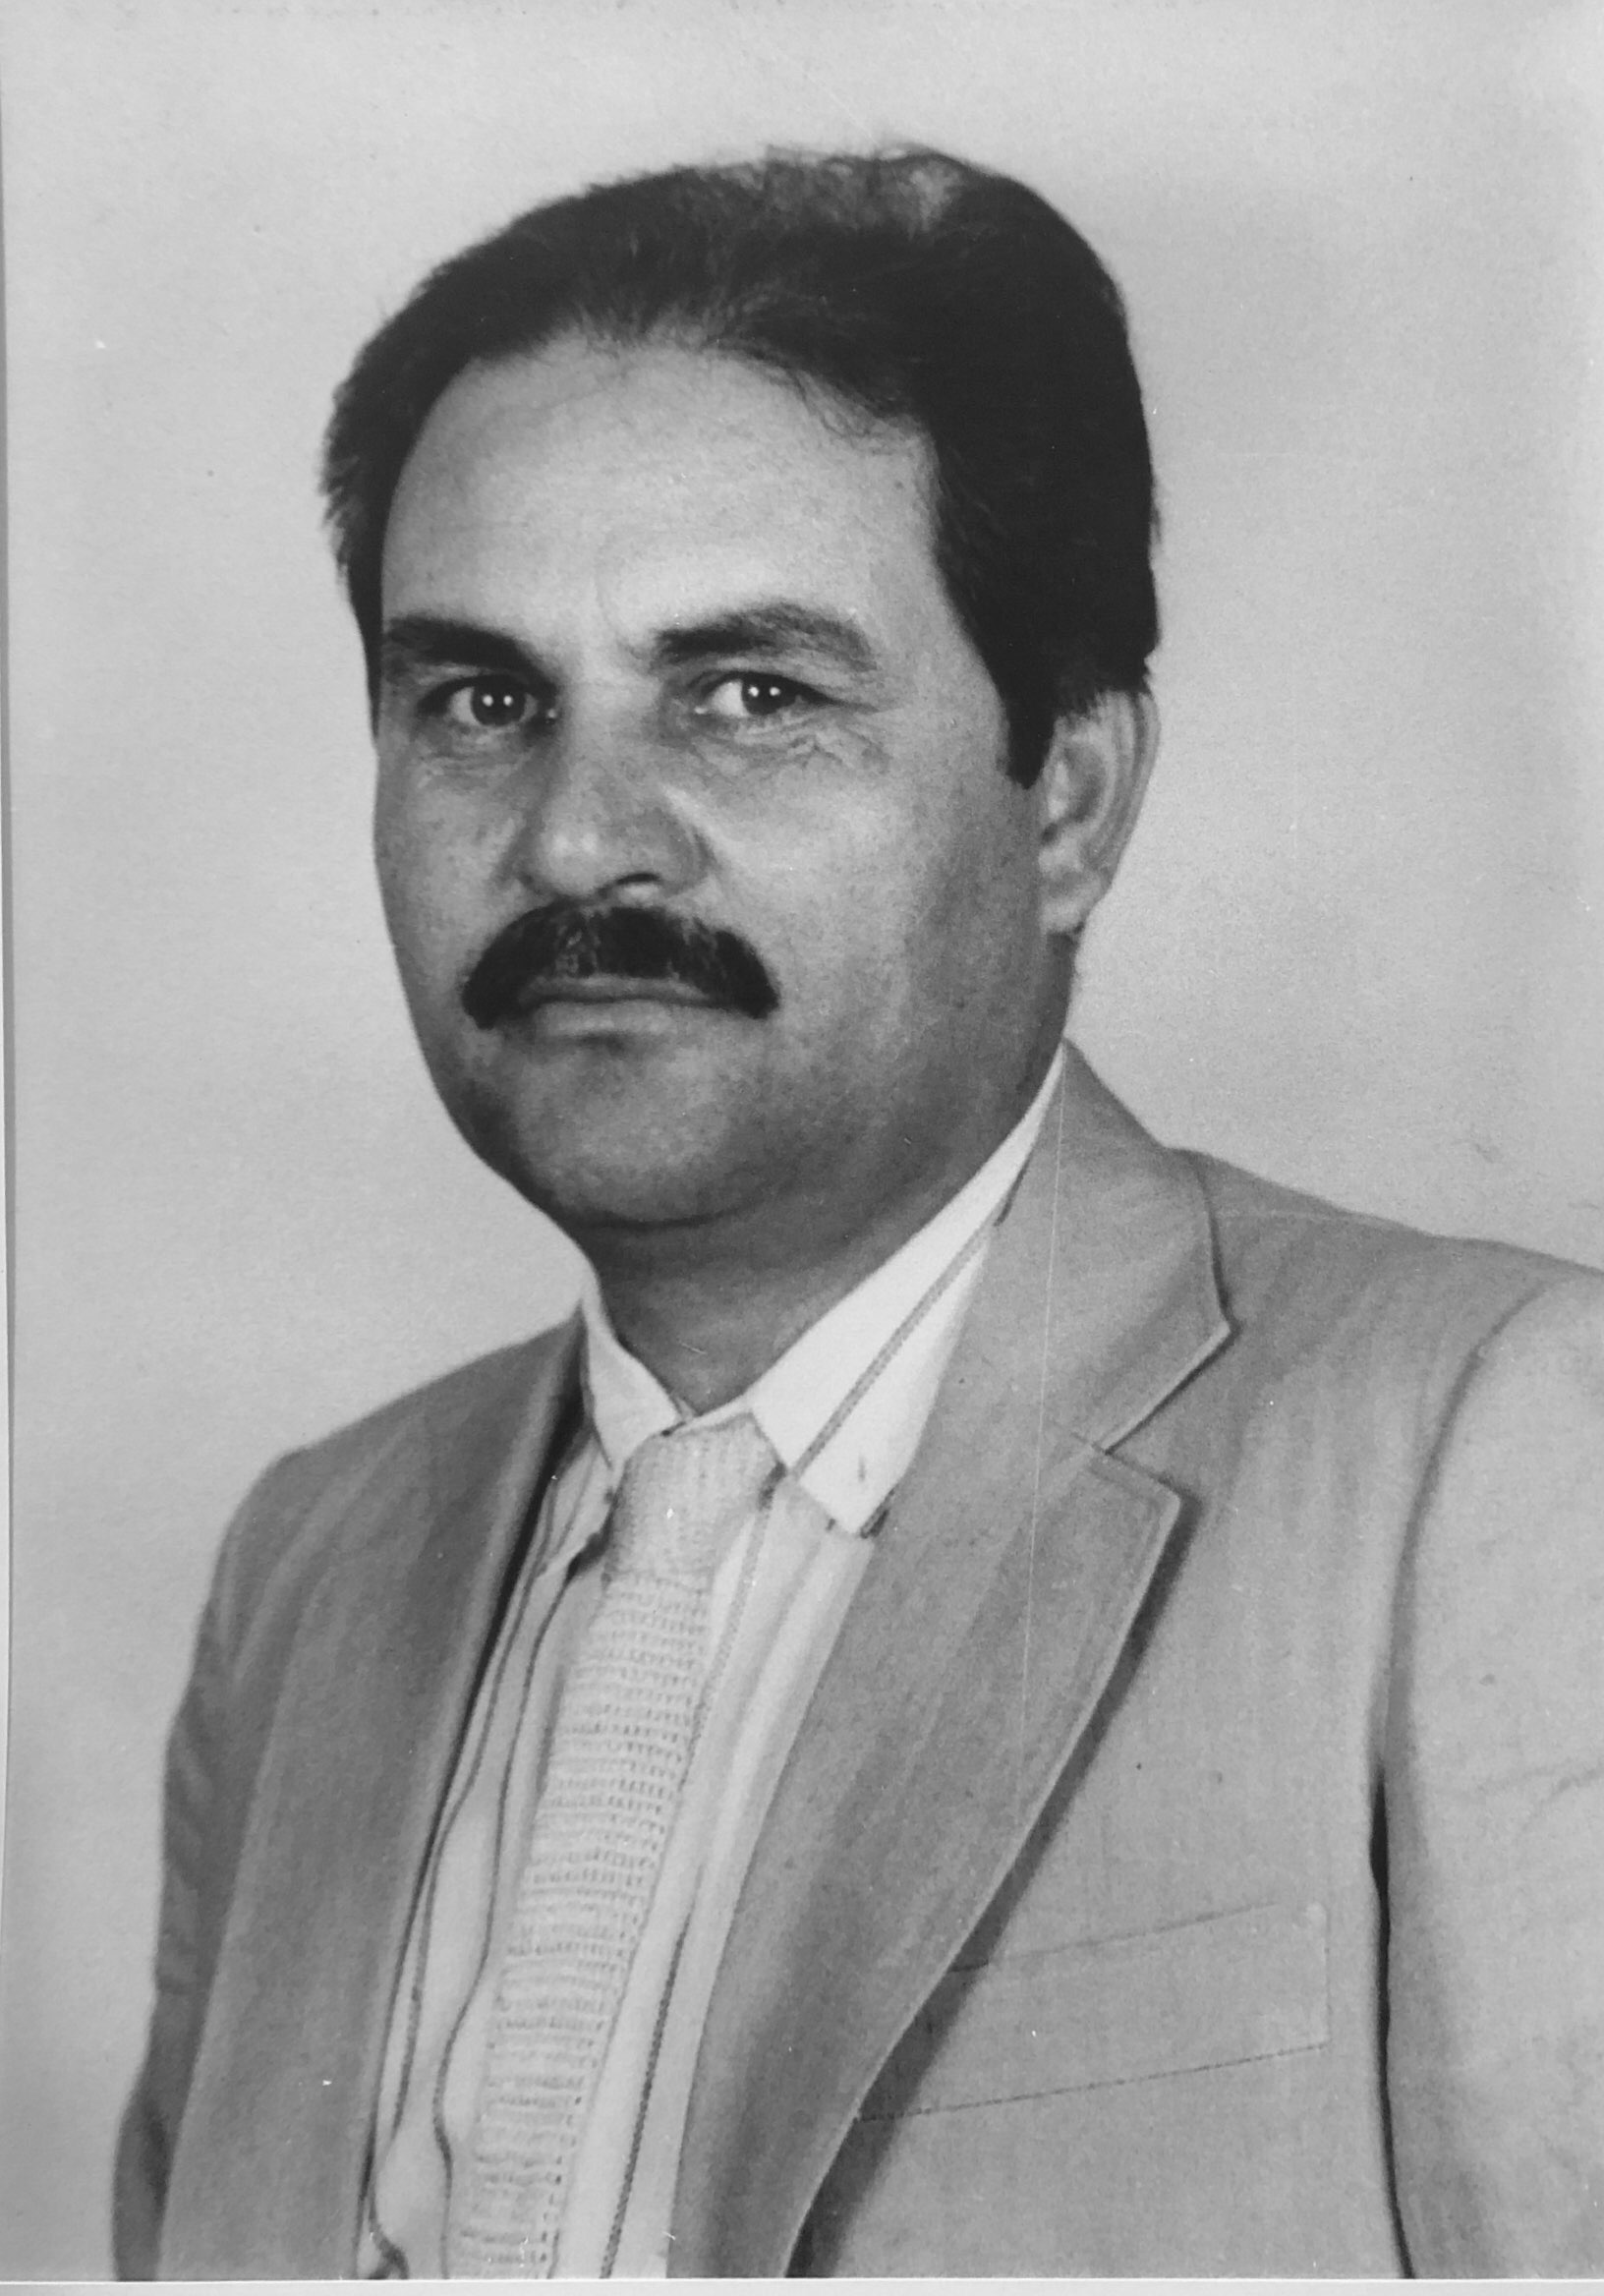 Ailton Almeida de Barros (1991 - 1992)